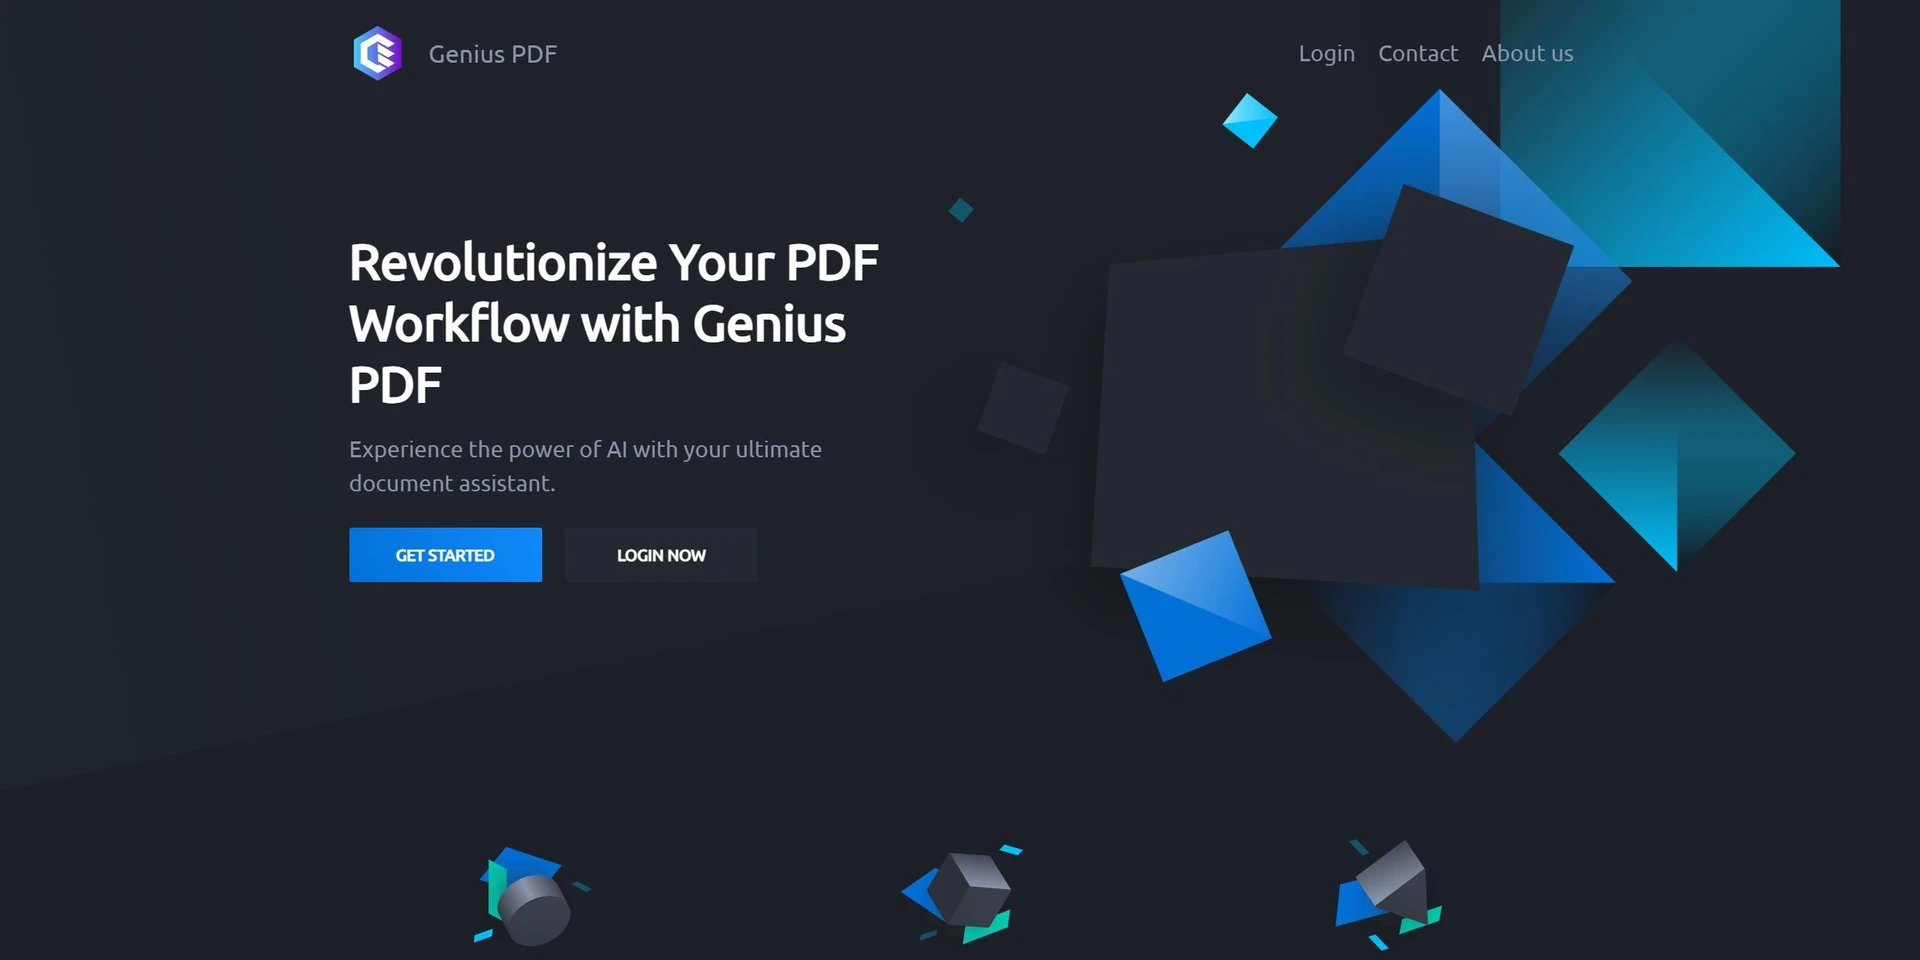 Genius PDFwebsite picture